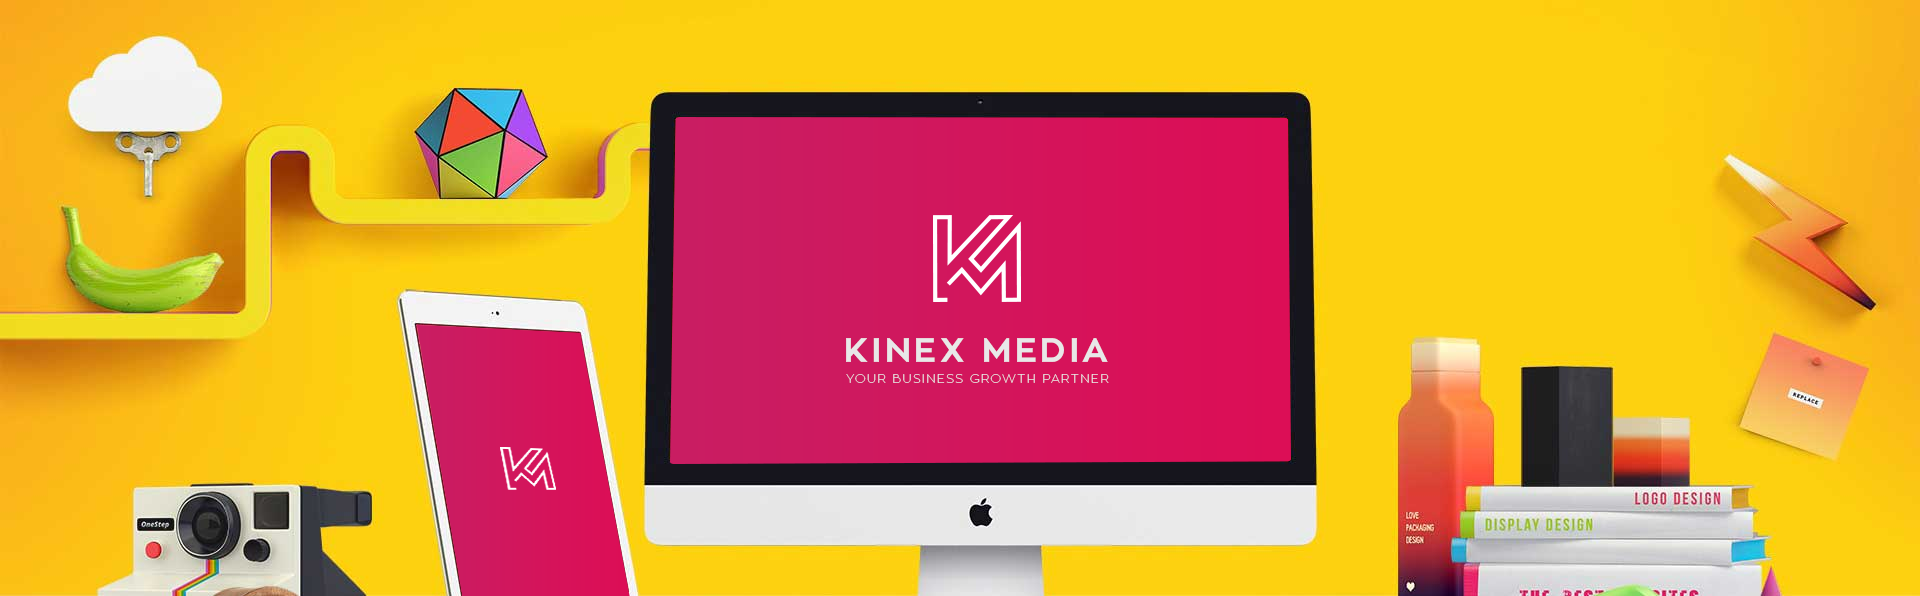 Kinex Media cover